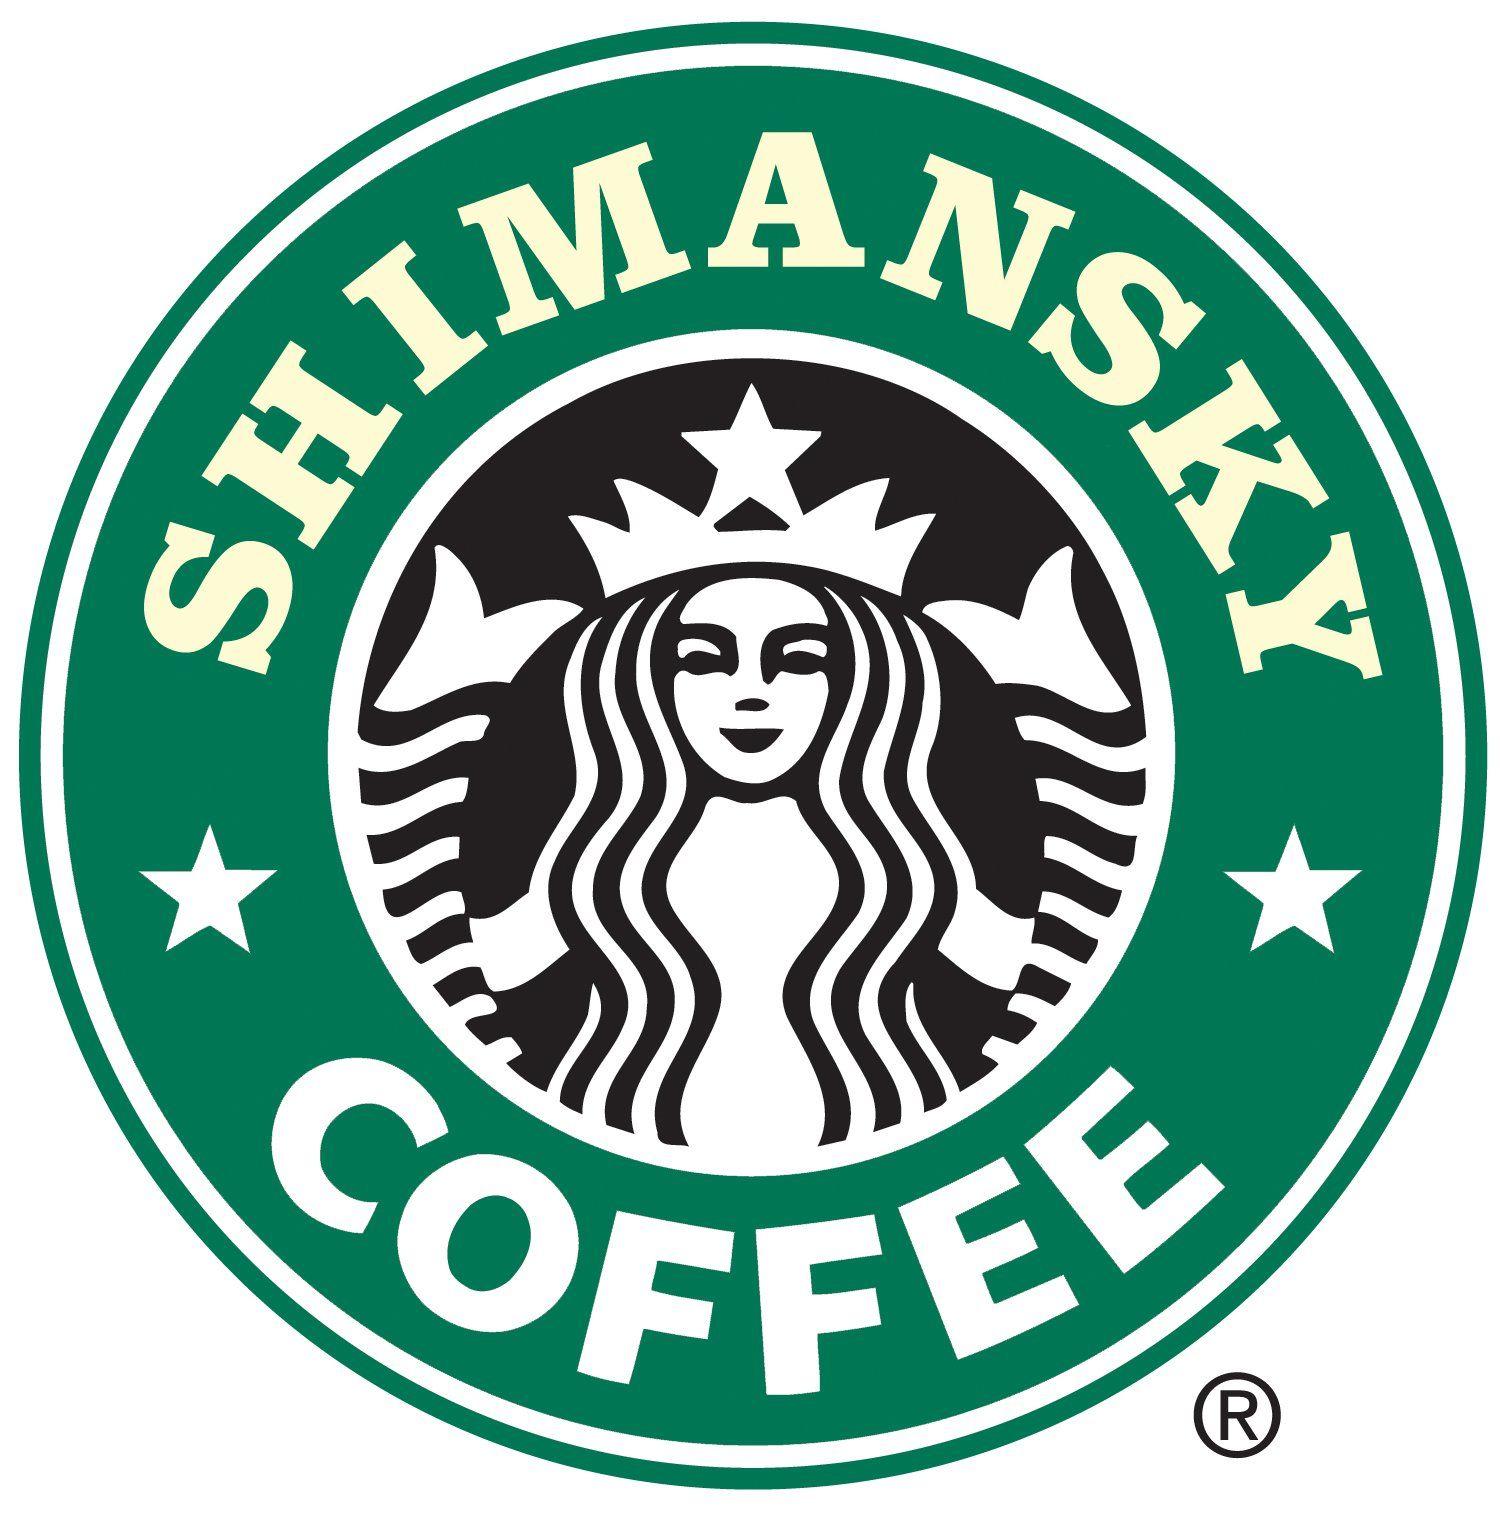 Starbucks Coffee Logo - Starbucks coffee logo psd by shimapa on DeviantArt